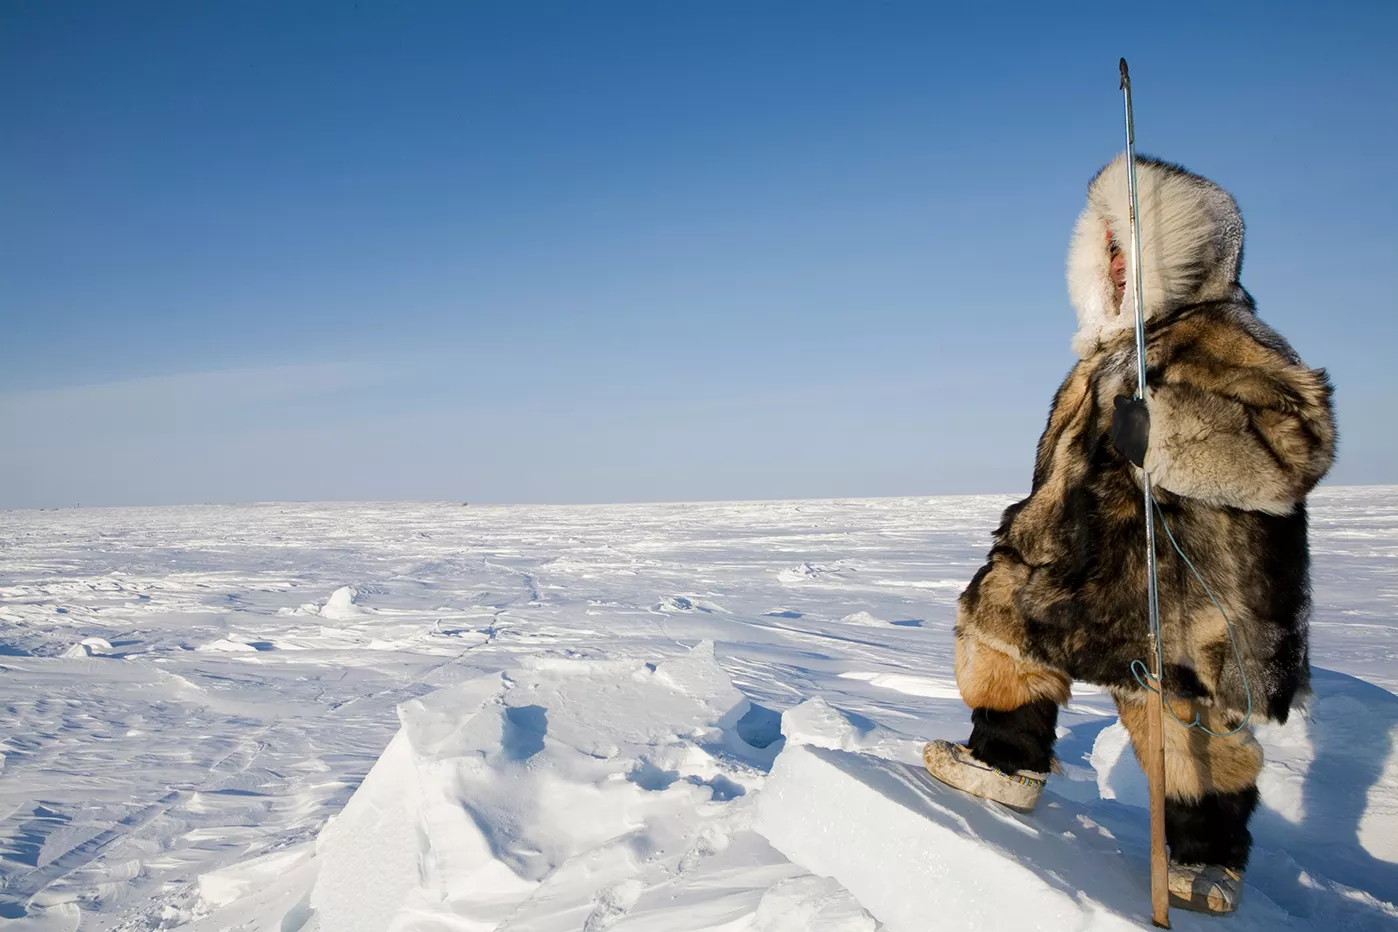 Els pobladors de les zones àrtiques s’han adaptat genèticament al fred: el seu metabolisme els  permet alimentar-se de carns  molt greixoses i prescindir de vegetals